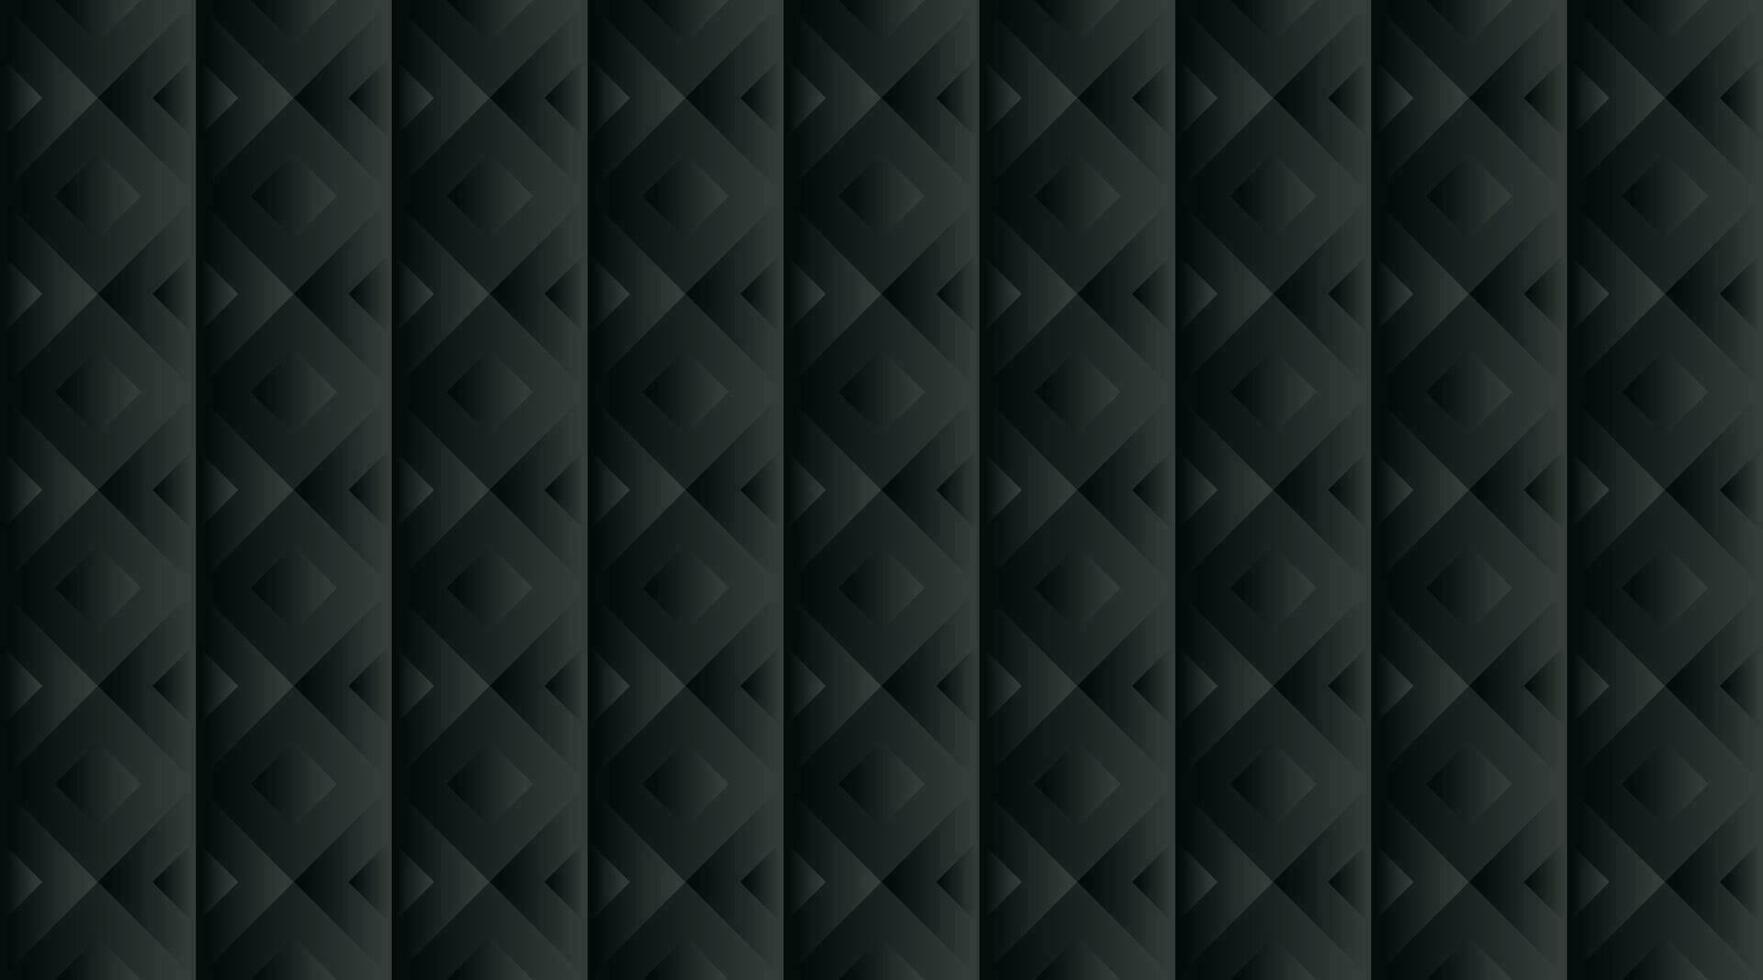 abstrakt svart geometrisk bakgrund mönster design vektor